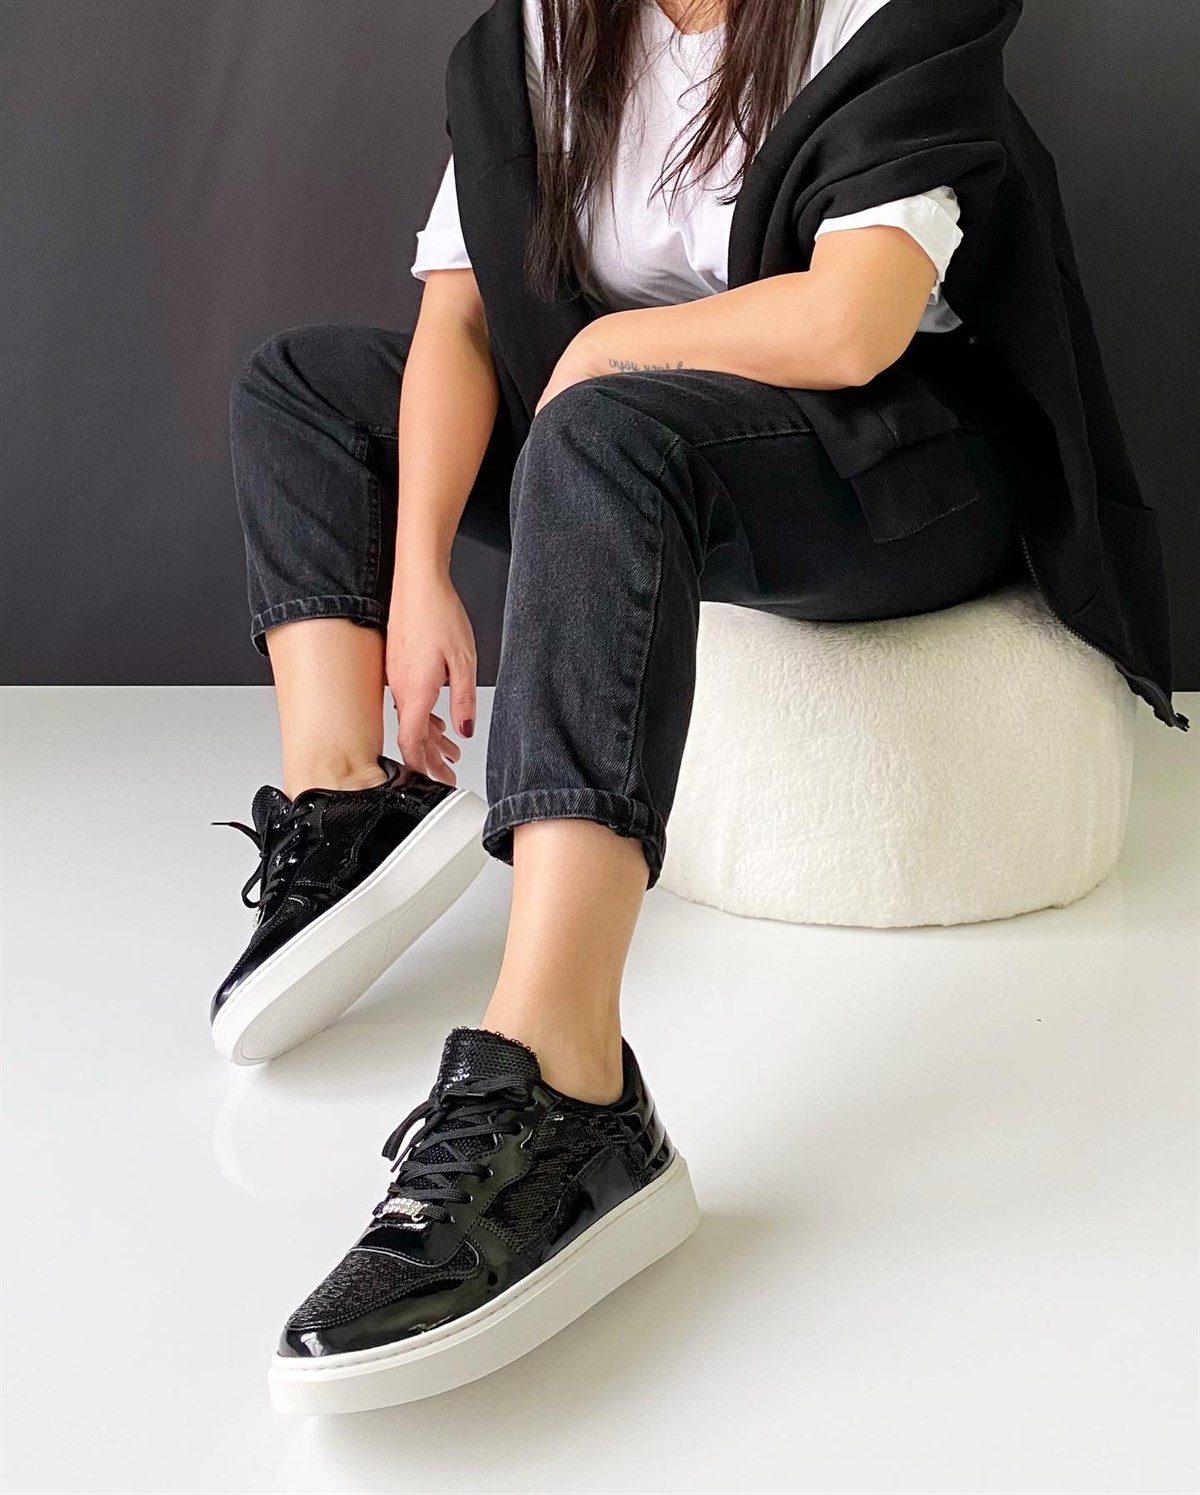 Rinus Günlük Kadın Spor Ayakkabı - Siyah & Siyah Pullu